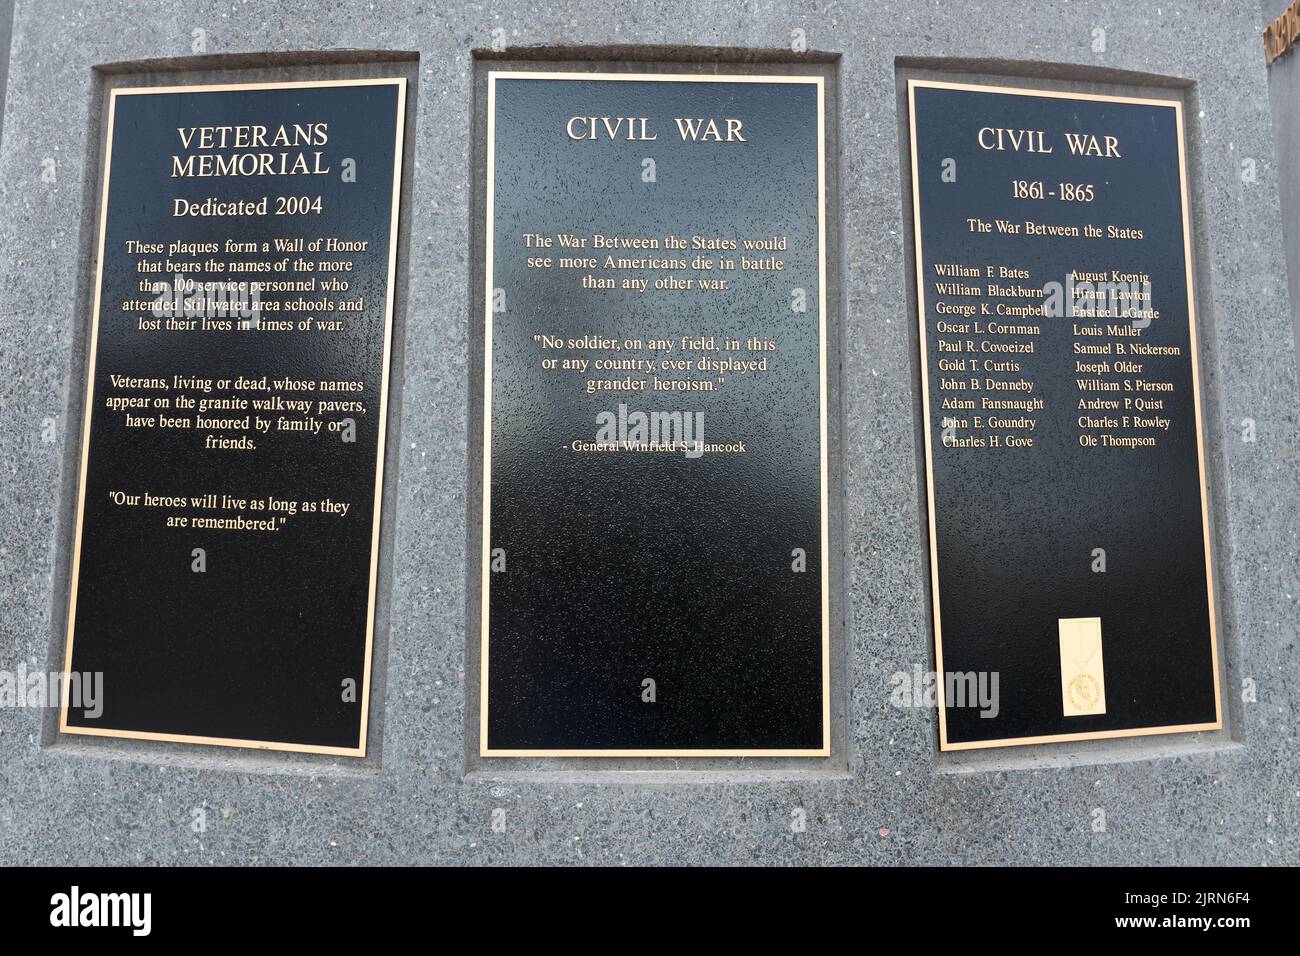 STILLWATER, MN, USA - AUGUST 24, 2022: Civil War placard at Stillwater Minnesota Veterans Memorial. Stock Photo